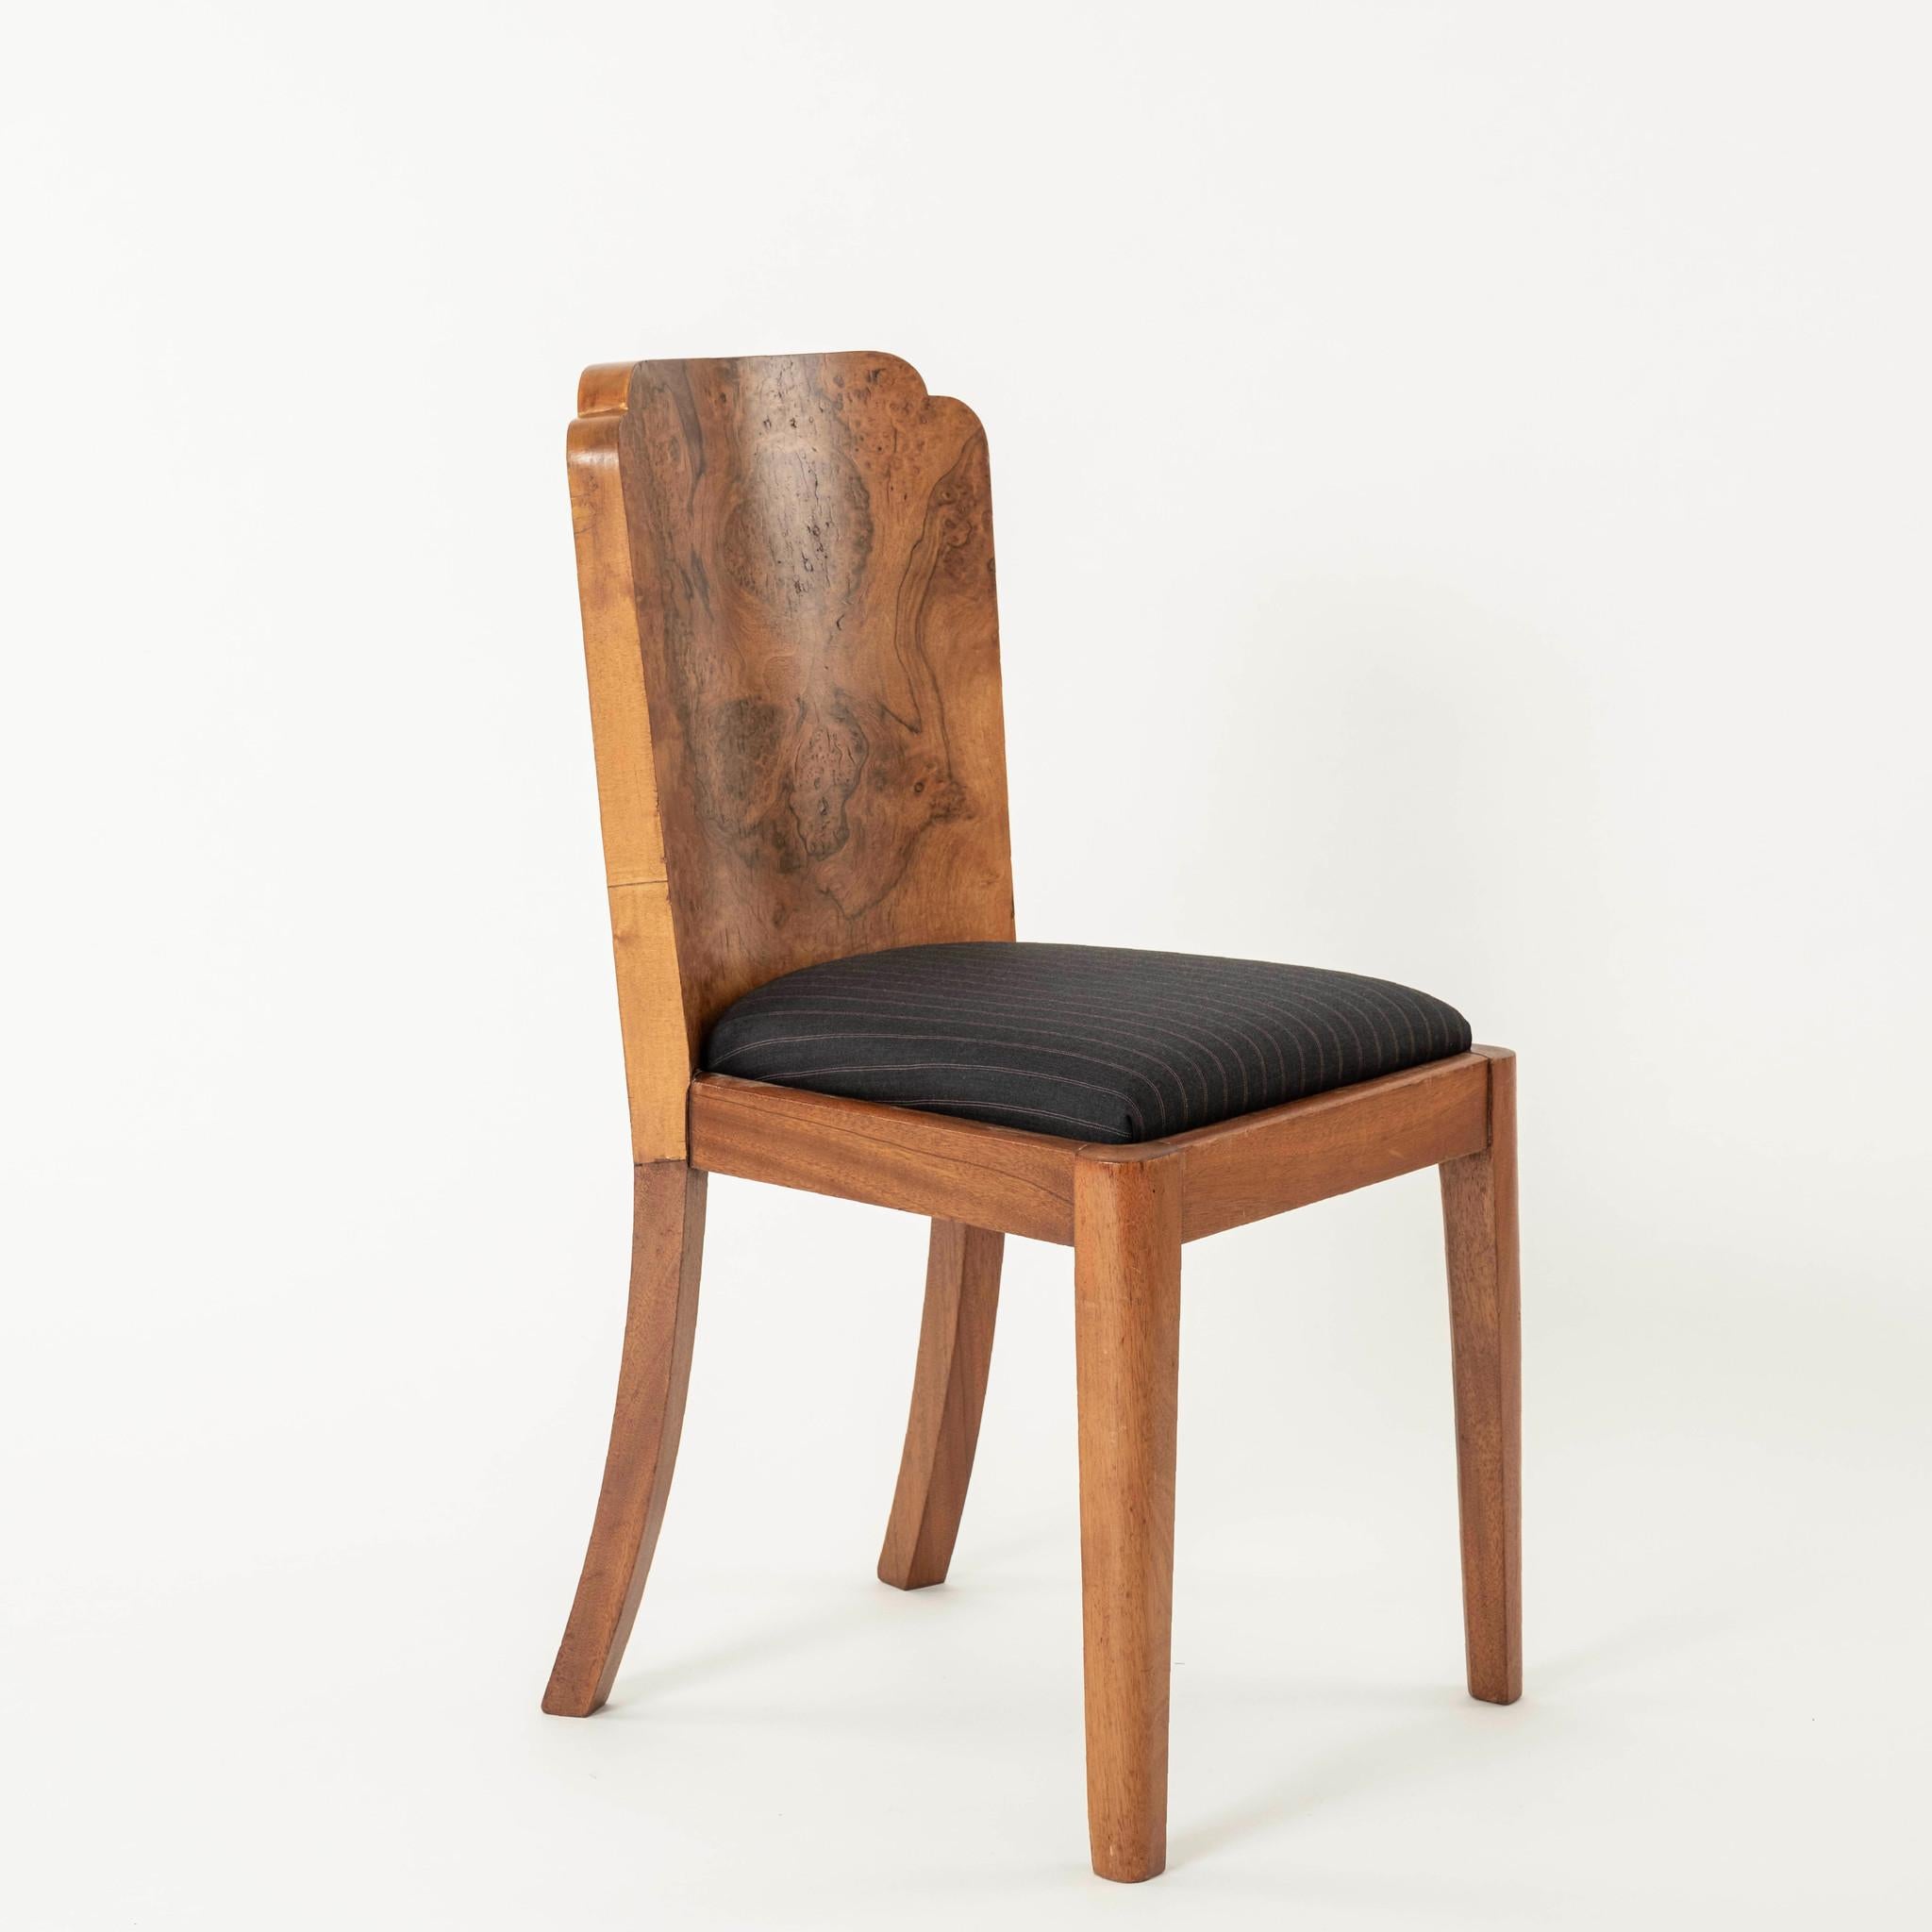 Chaise d'appoint en bois de ronce de style Art Déco français, nouvellement recouverte d'une laine italienne à rayures. Cette chaise est également disponible C.I.C. pour un supplément de 75,00 $.